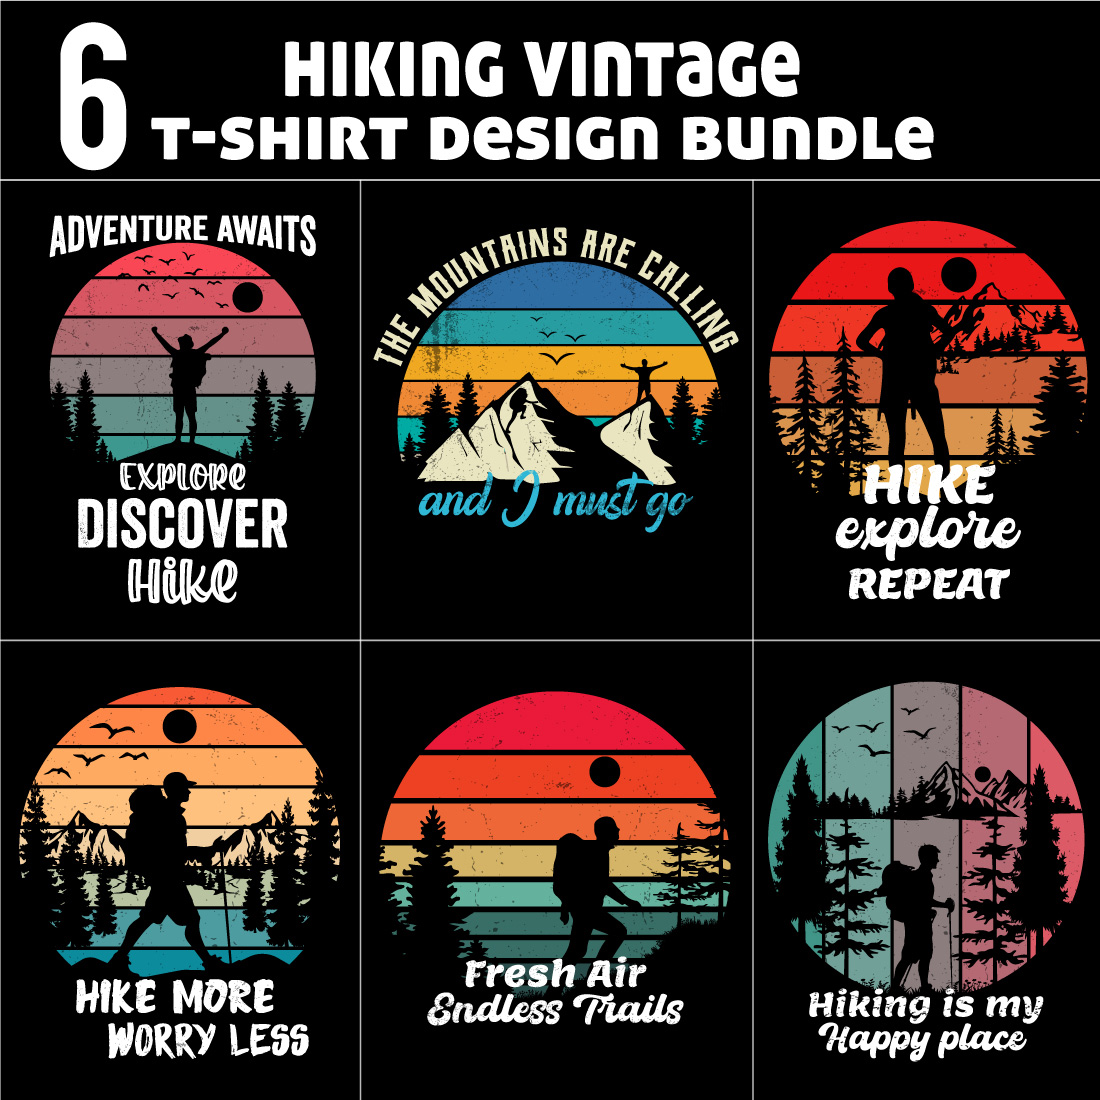 Hiking vintage t-shirt design bundle preview image.